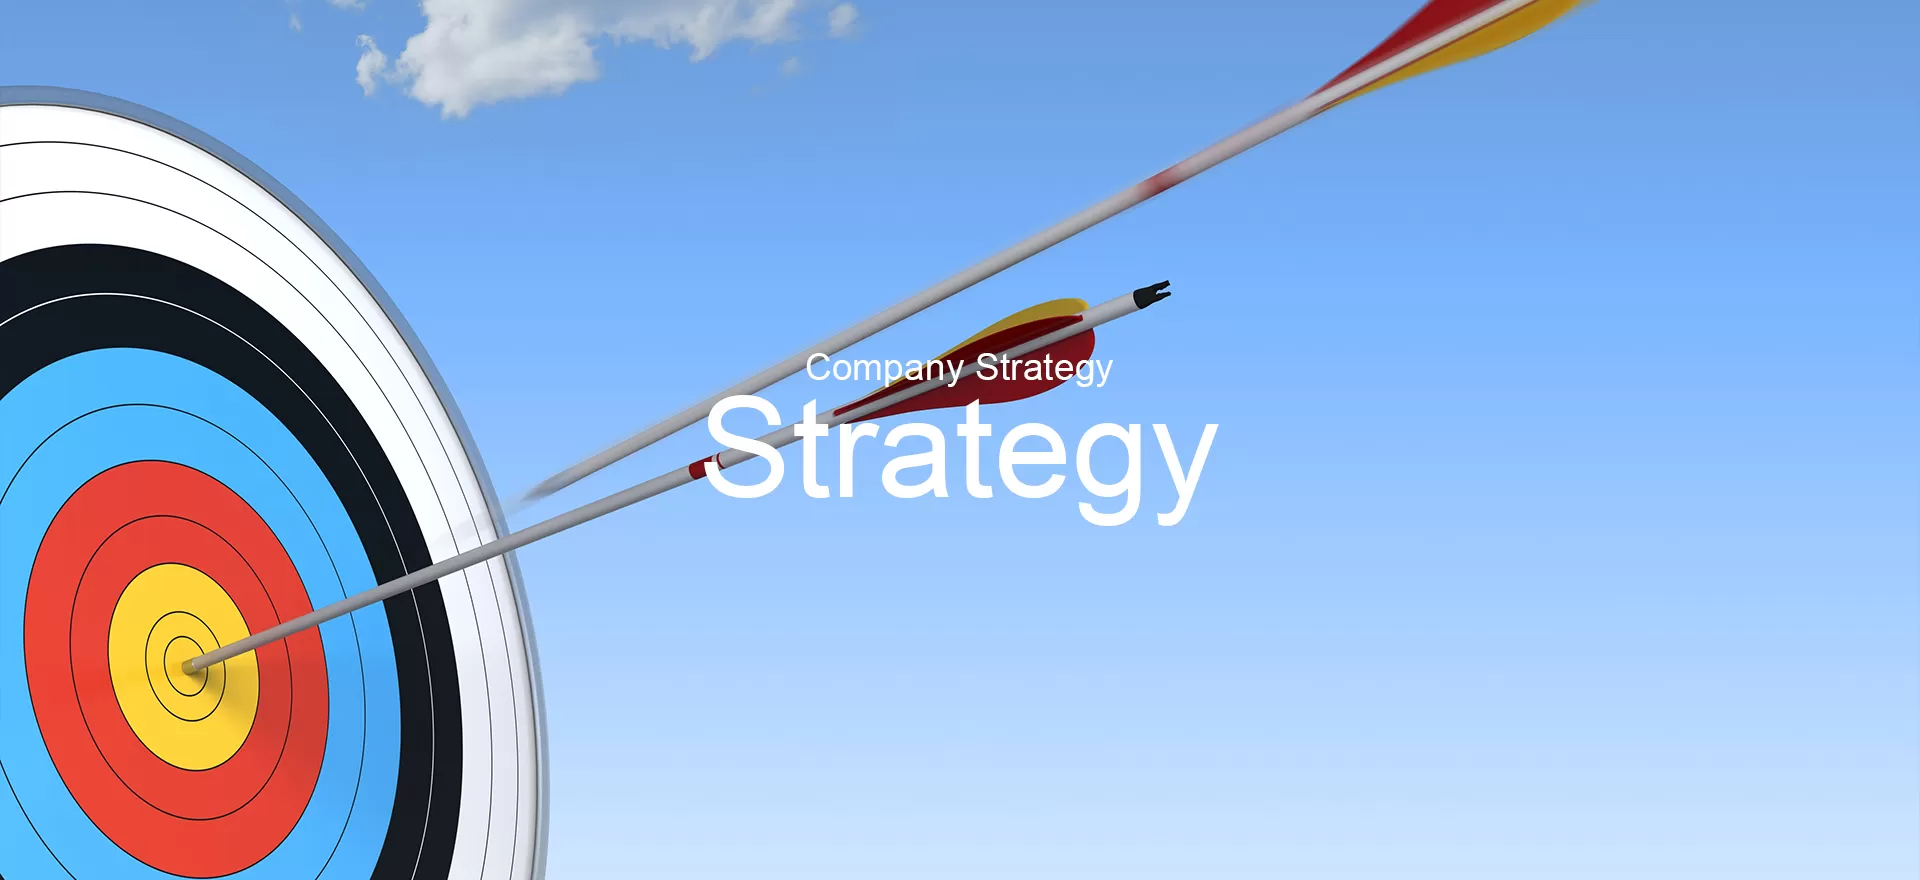 Company Strategy